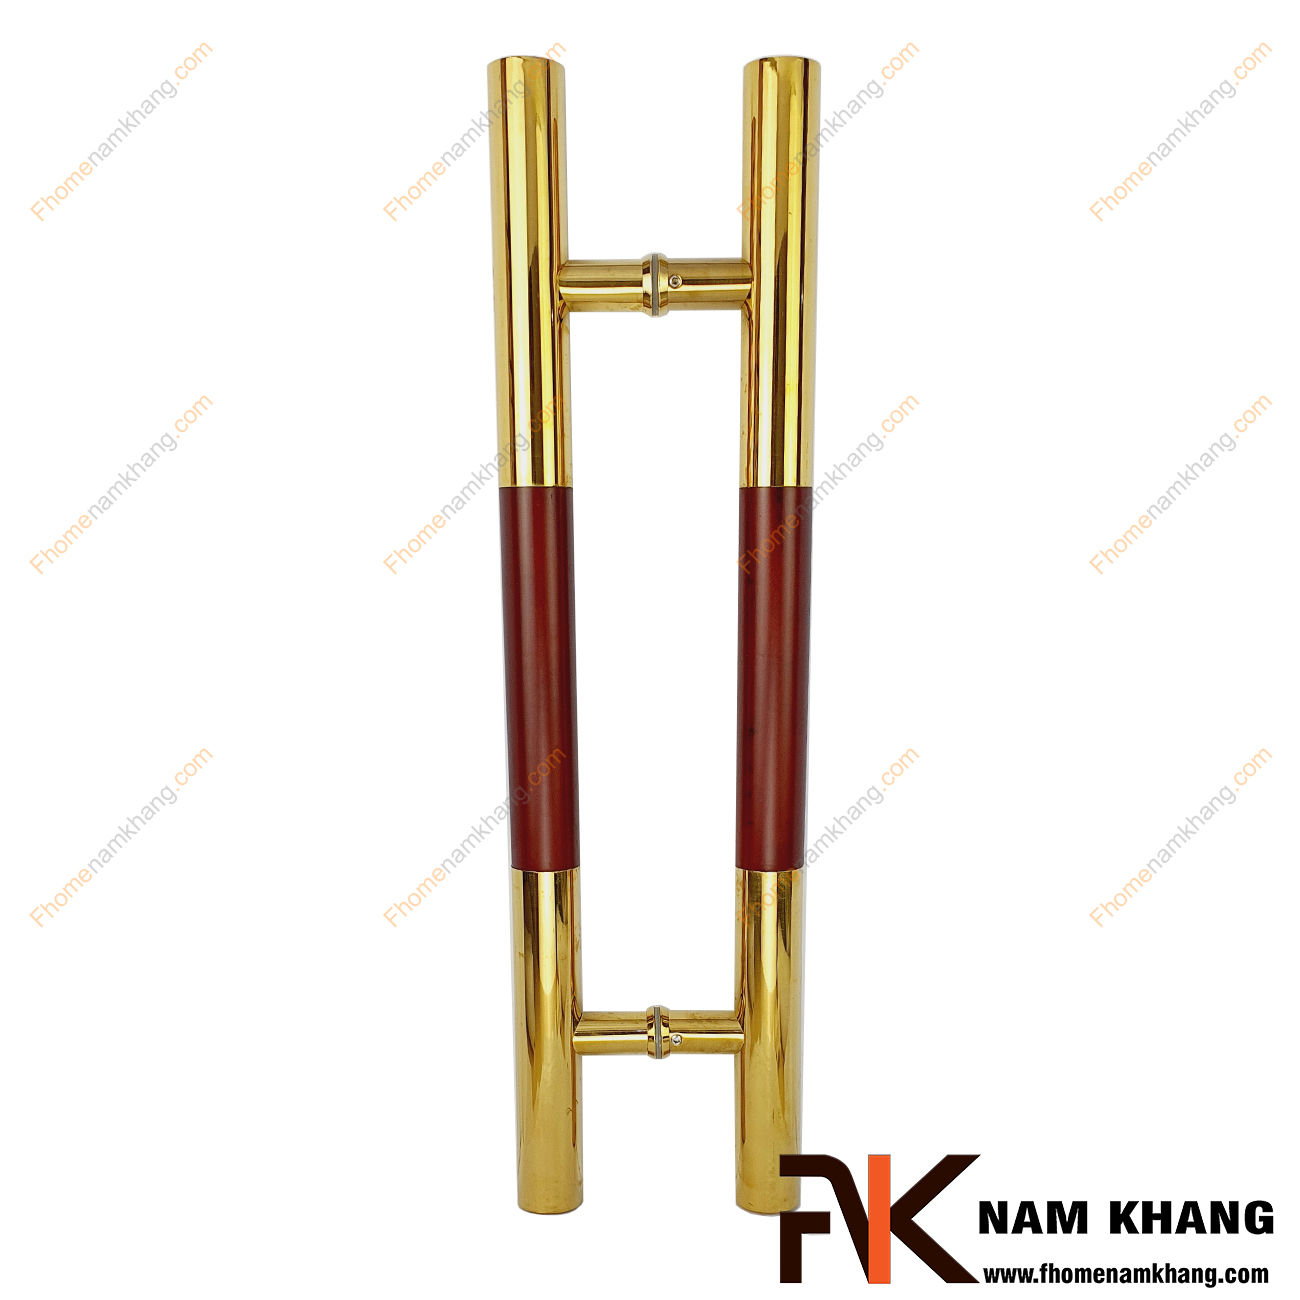 Tay nắm cửa chính màu inox vàng bóng phối gỗ đỏ NKC003-GV là sản phẩm tay nắm tủ đồng tâm dùng cho nhiều loại cửa vời đầy đủ các chất liệu theo thiết kế nội thất.